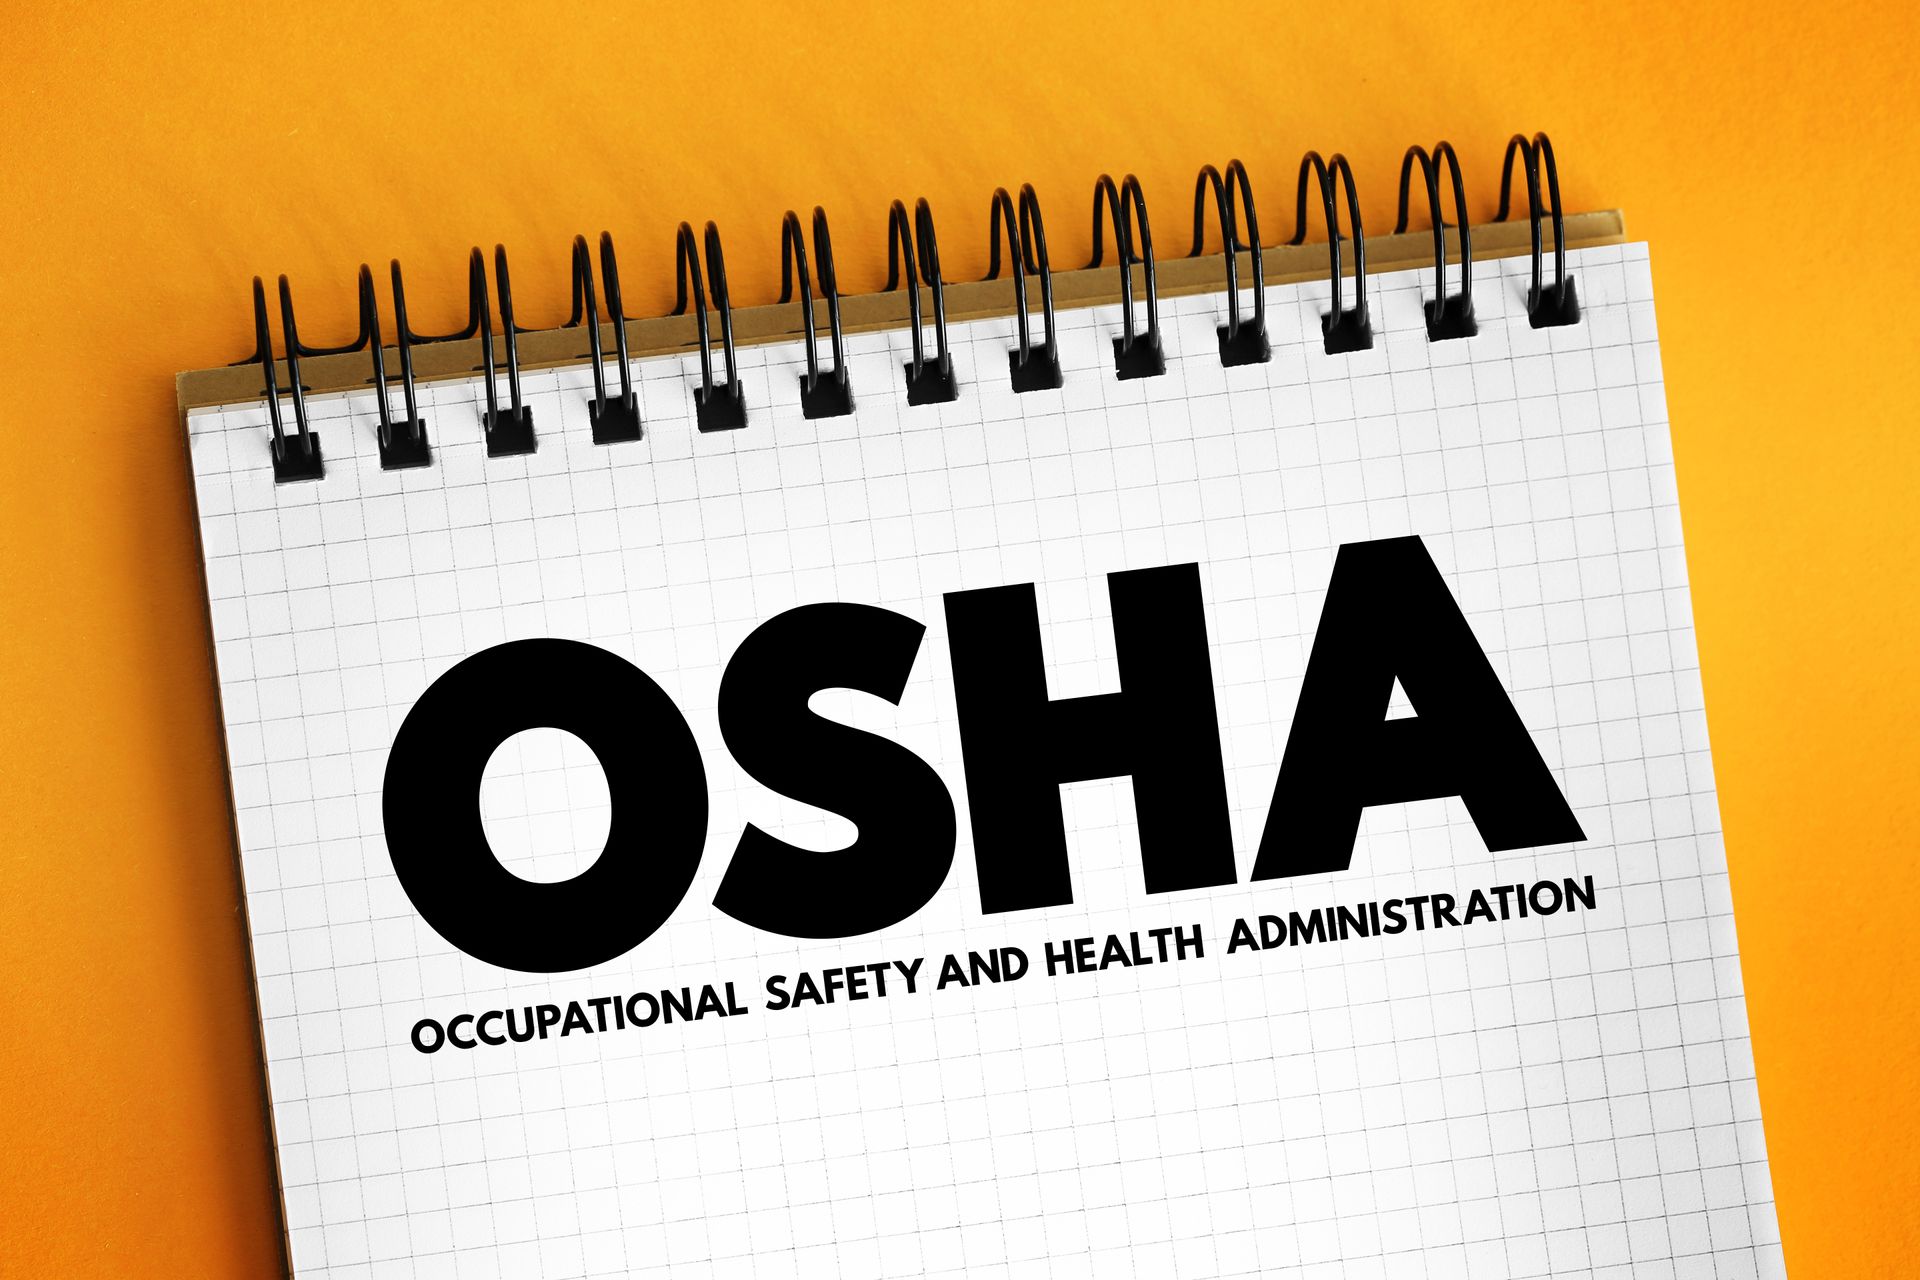 OSHA acronym